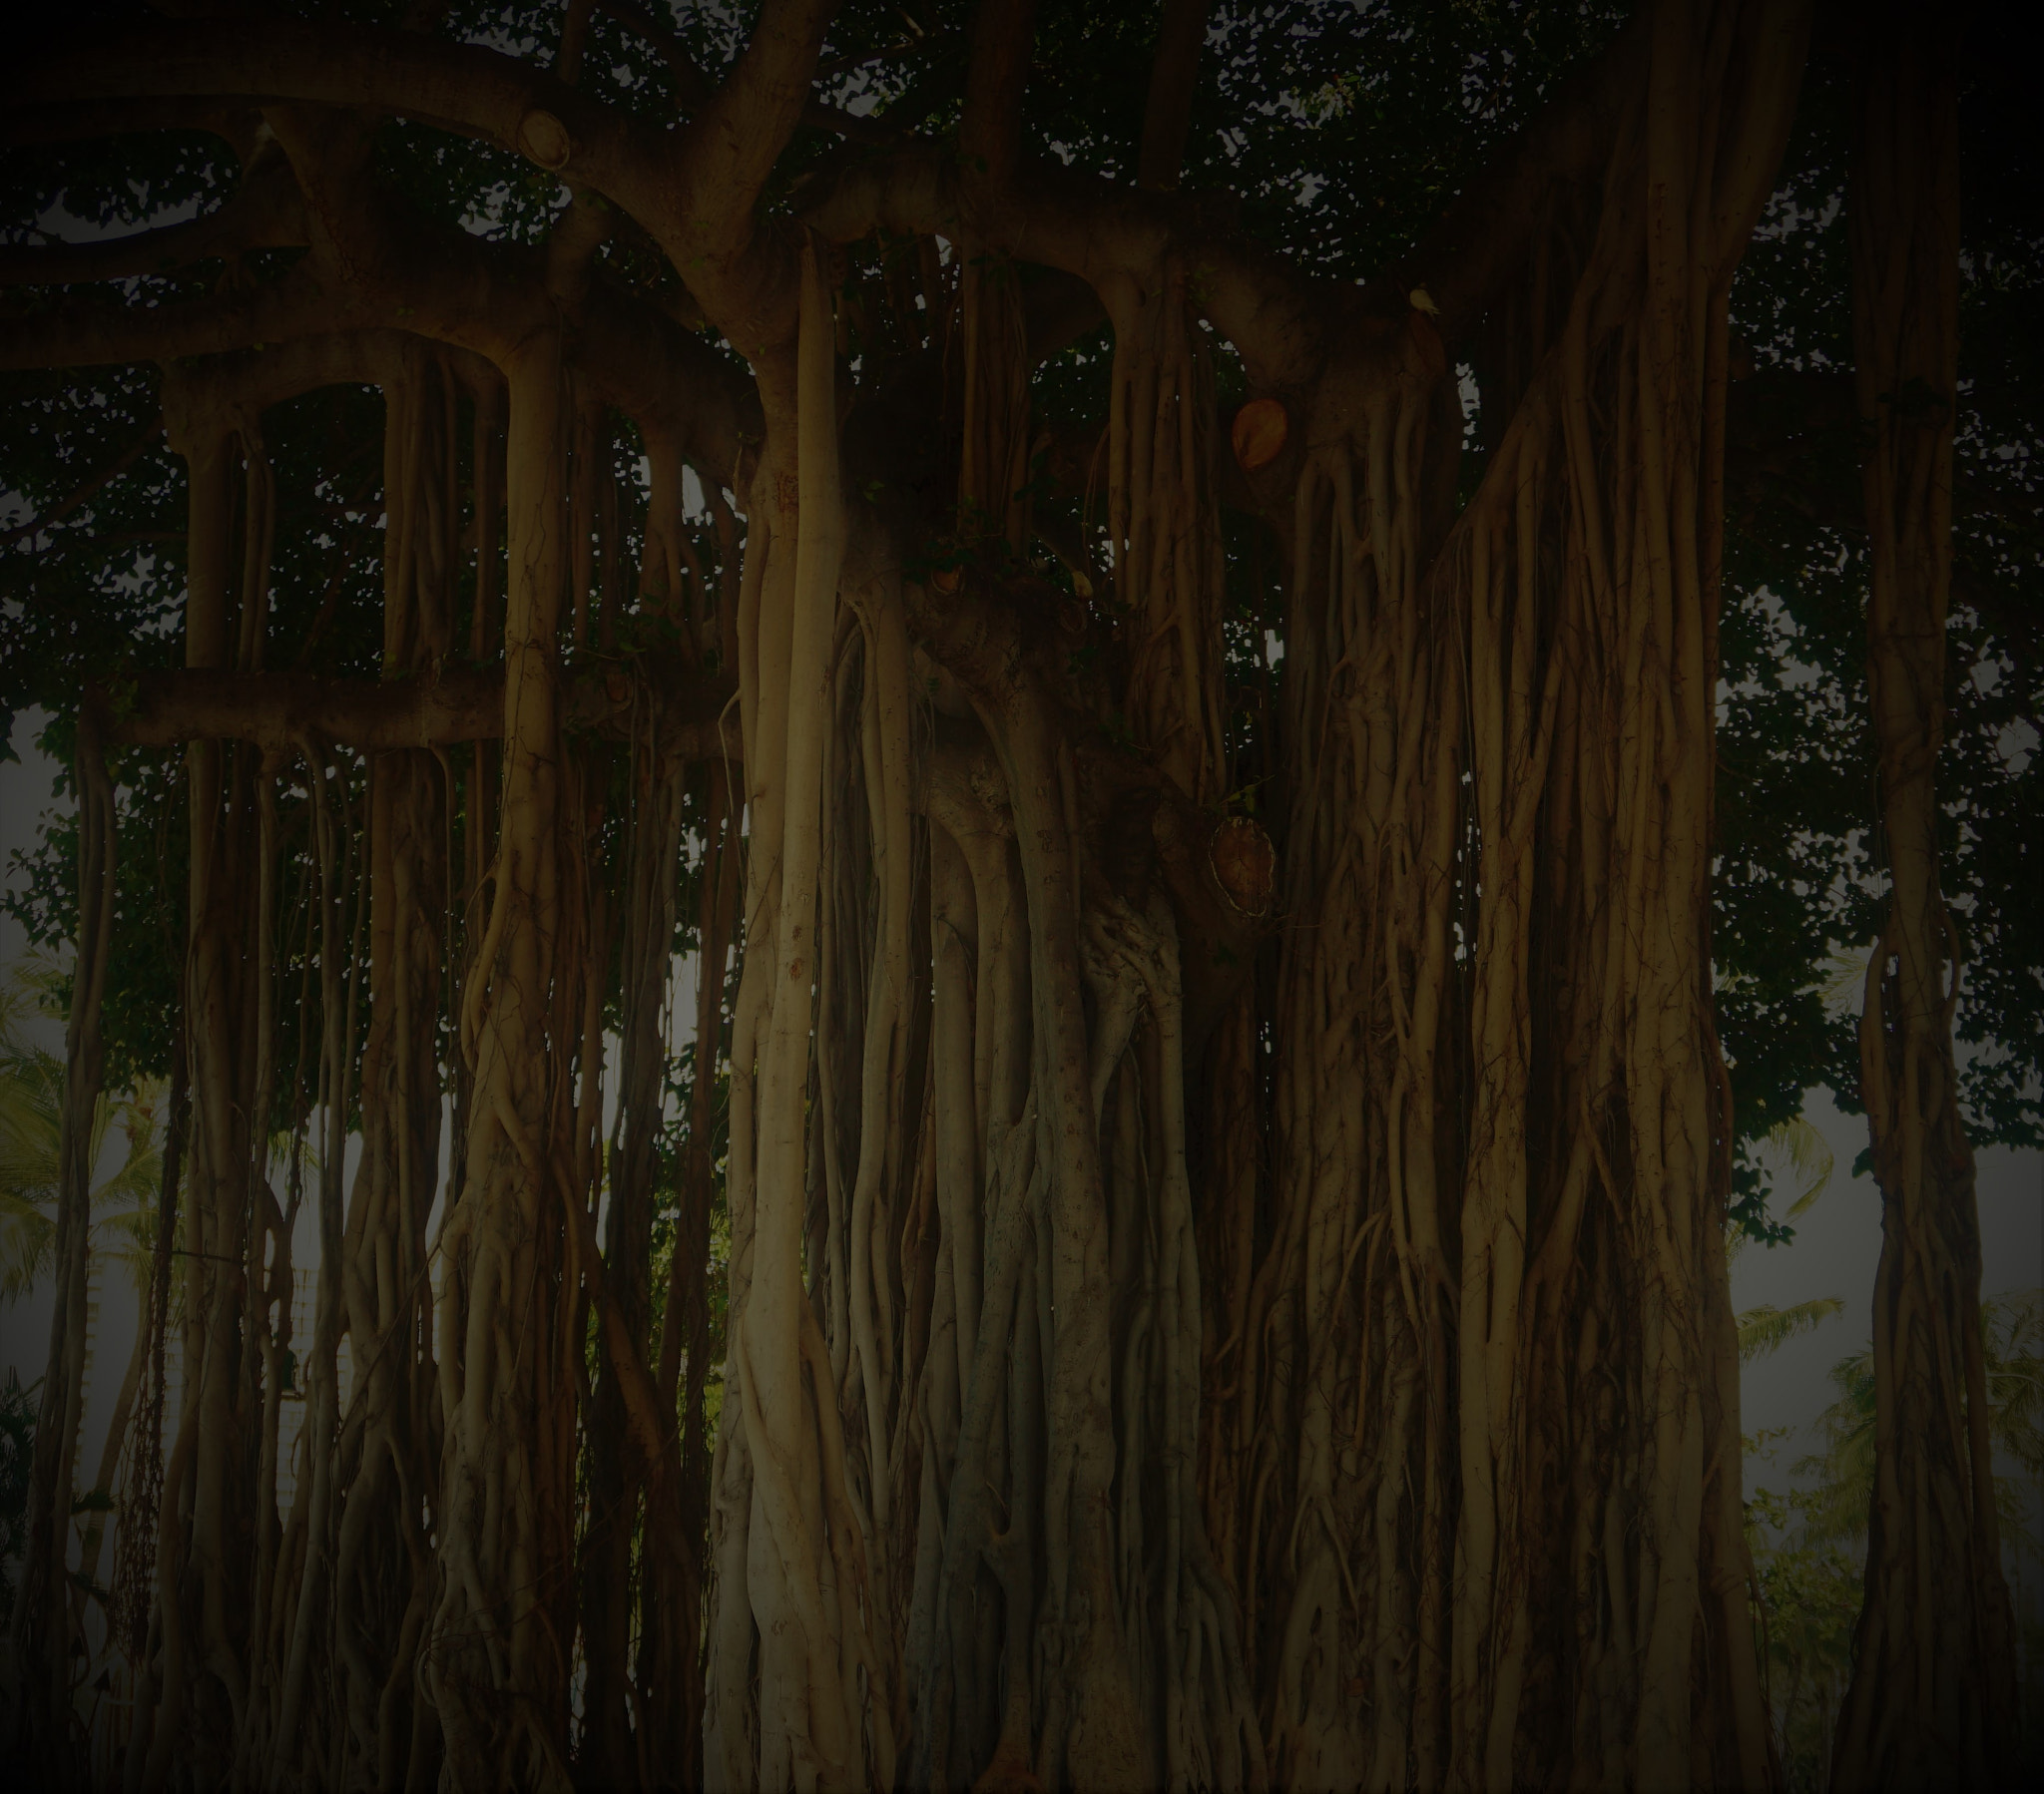 Sony a6300 + Sony E 18-50mm F4-5.6 sample photo. Banyan tree () photography